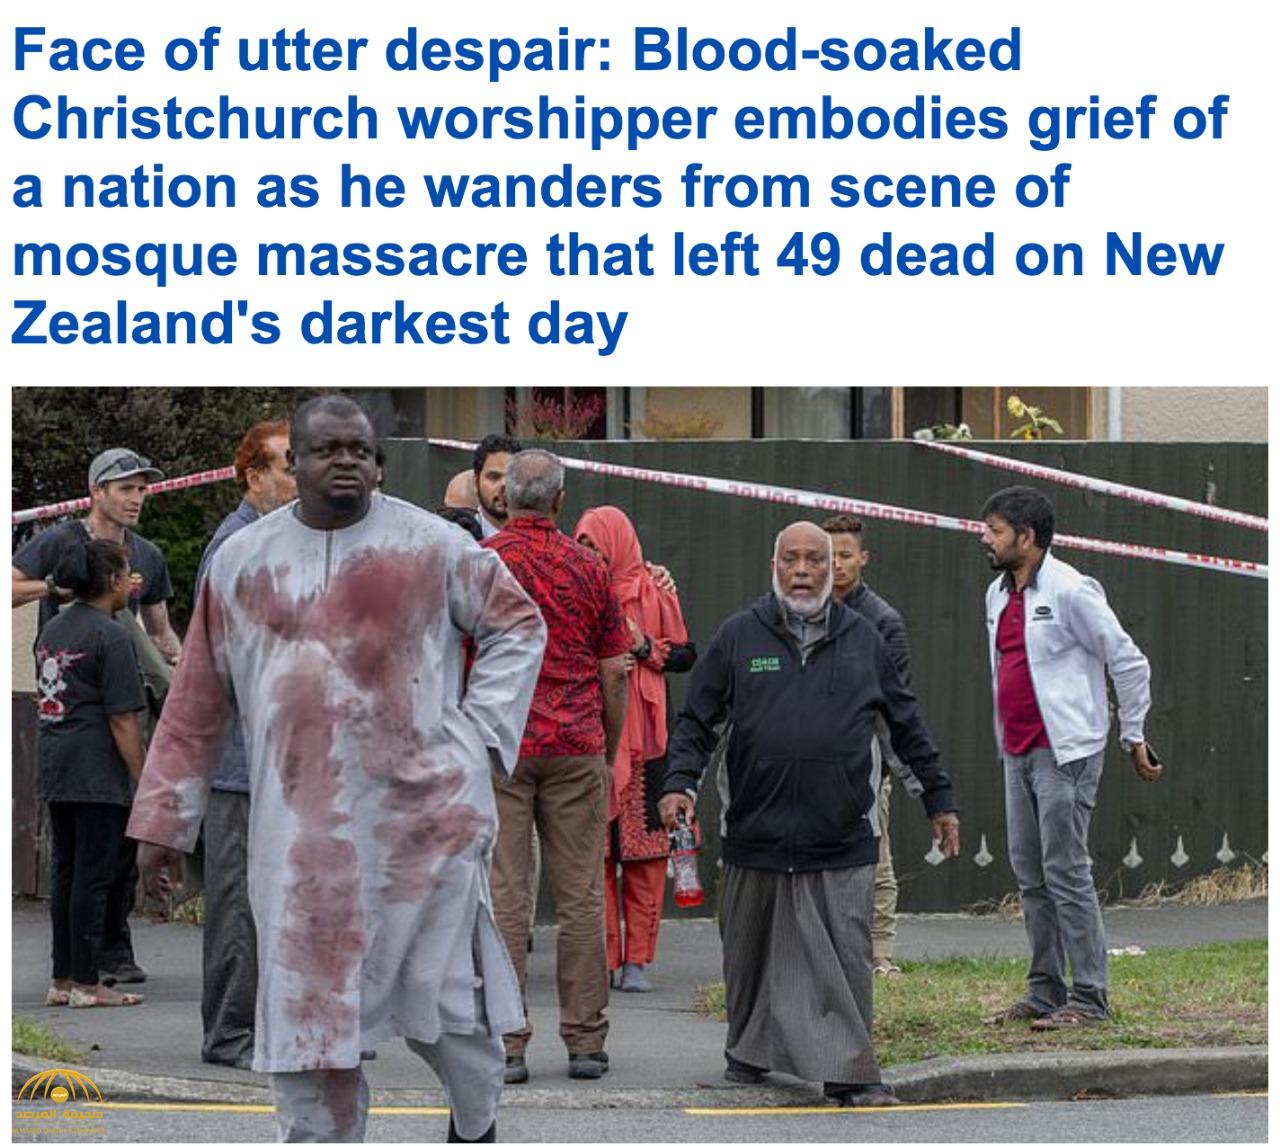 شاهد : صور جديدة من مذبحة المسجدين الإرهابية بنيوزيلندا توثق الفزع والصدمة على وجوه المصلين